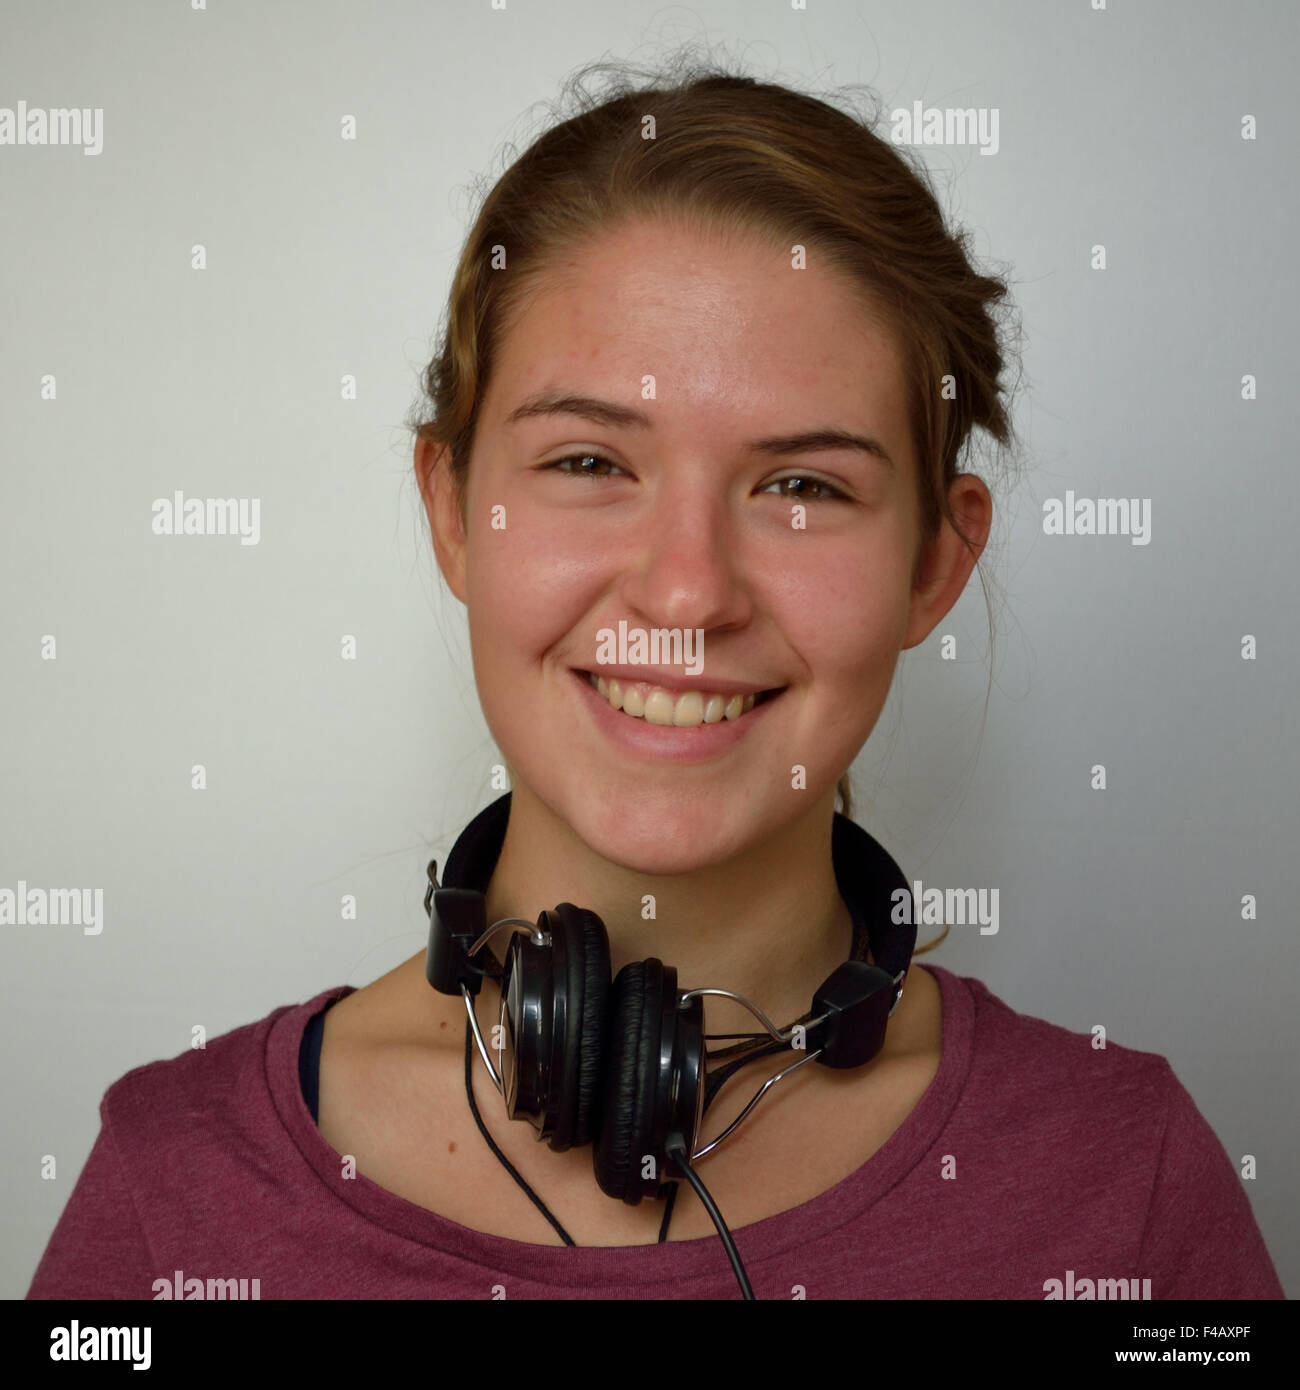 happy teenager with headphones Stock Photo